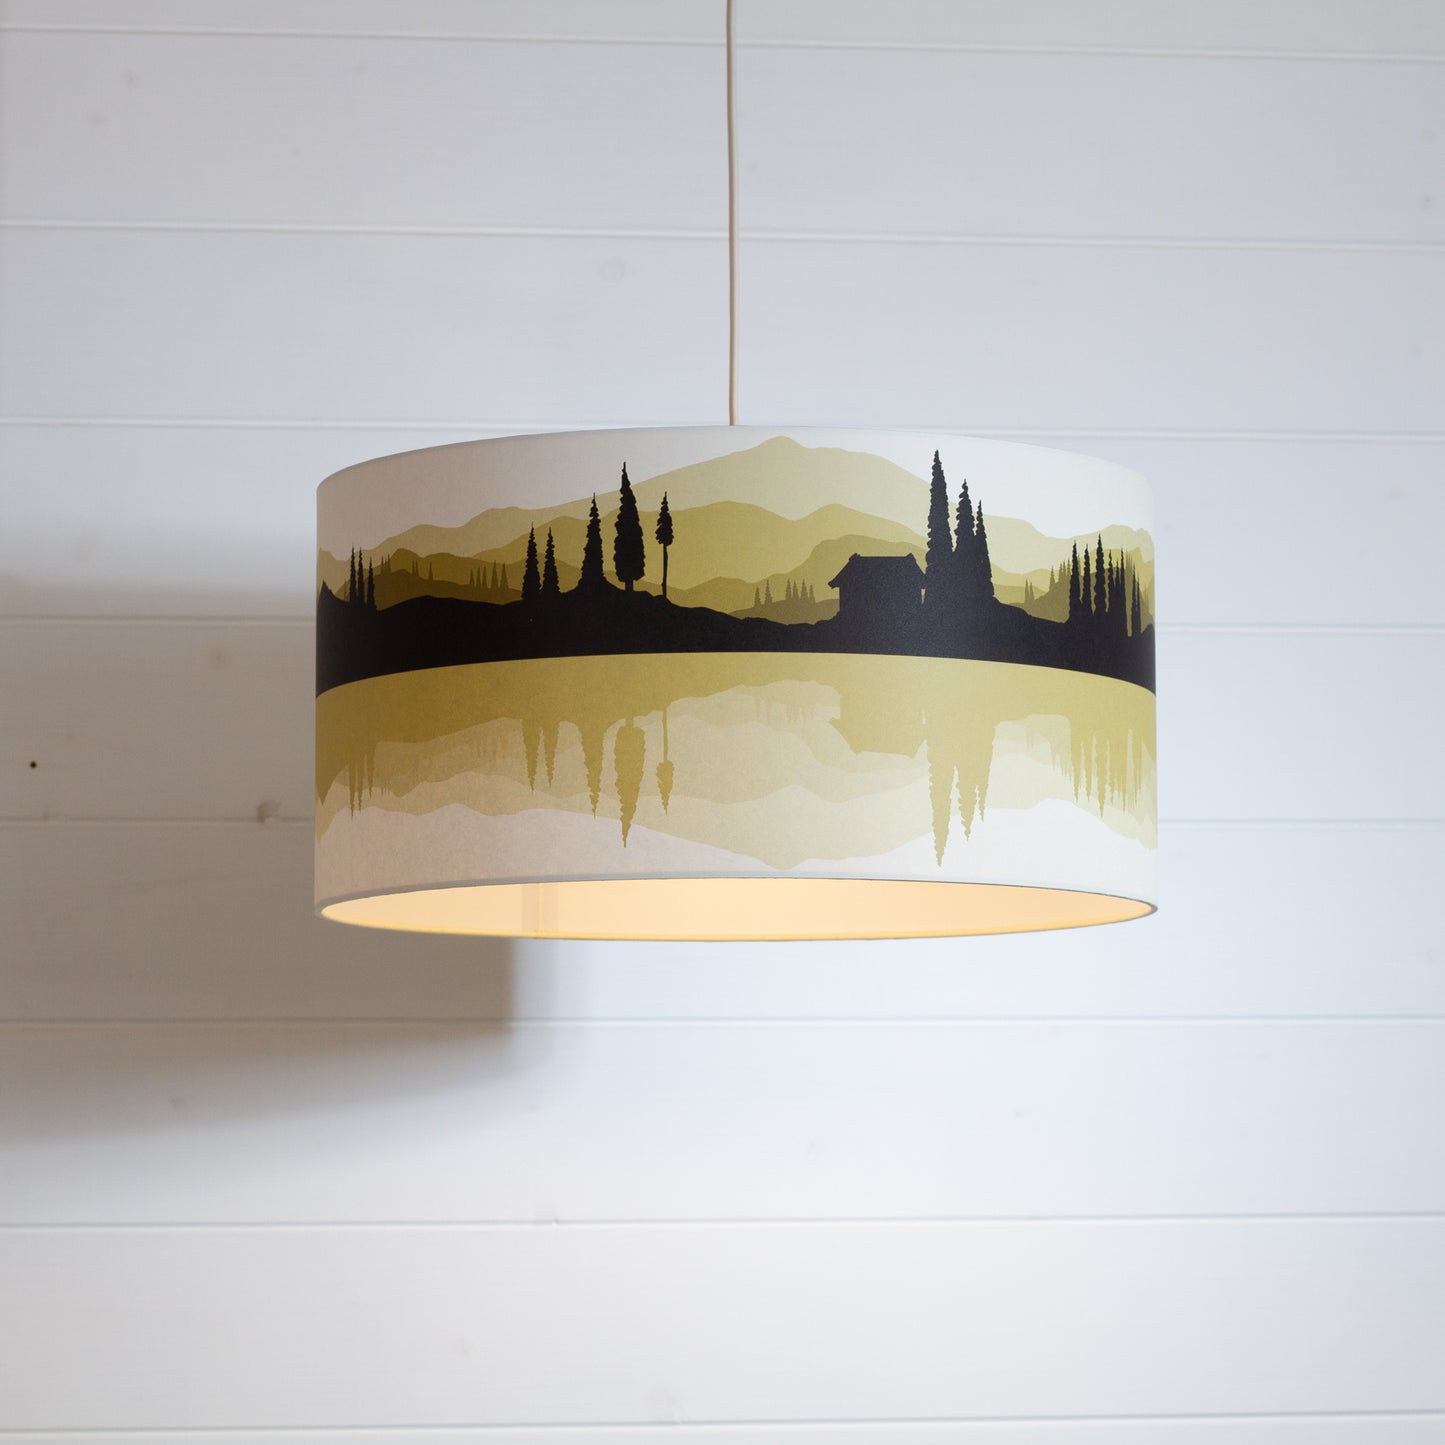 Landscape Reflection Print Drum Lamp Shade 40cm(d) x 20cm(h) - 7 Colour Options